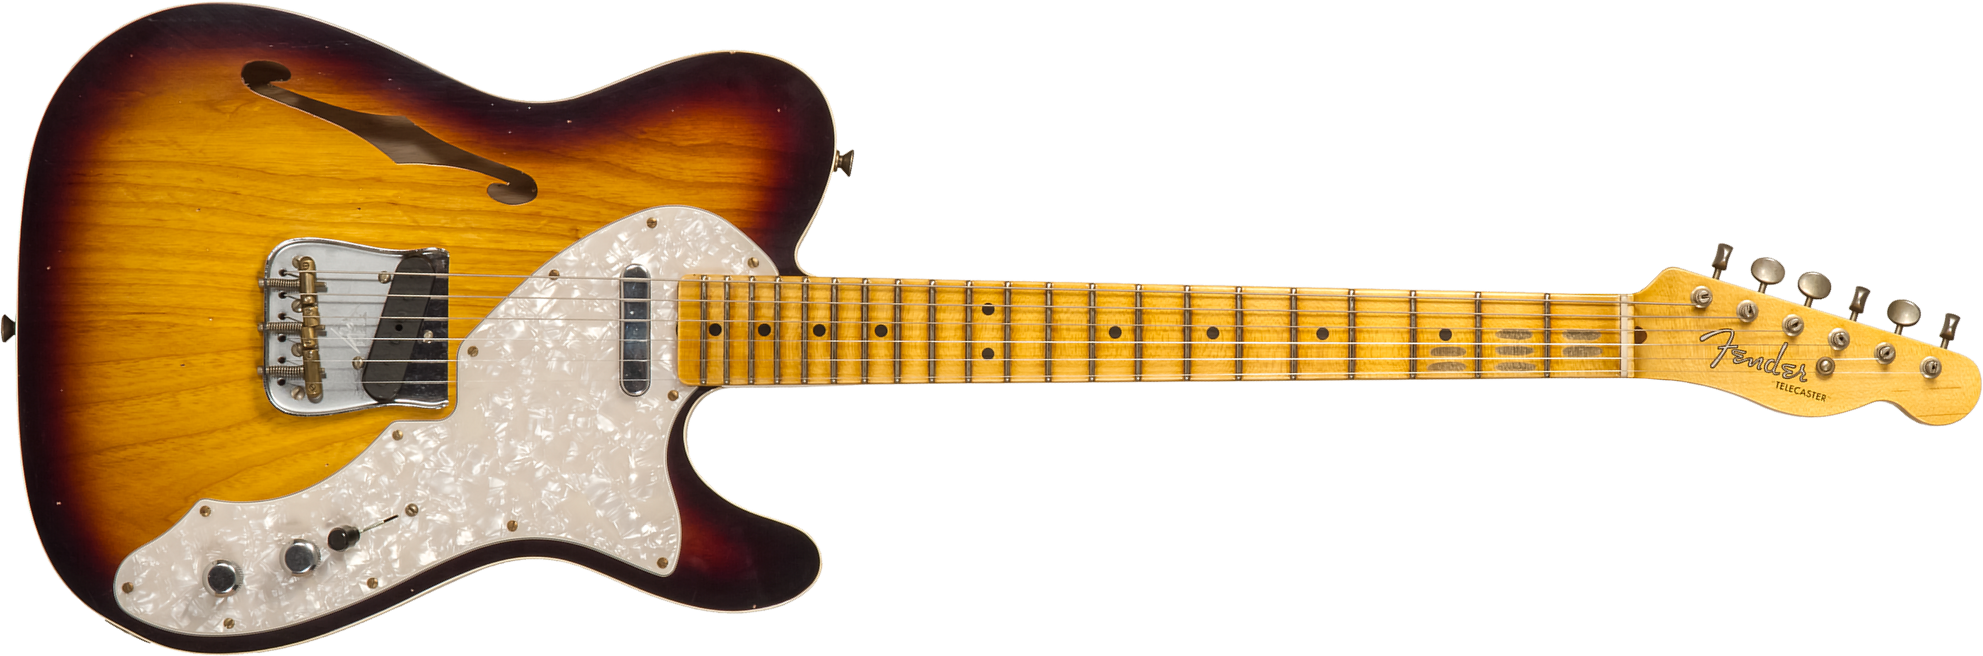 Fender Custom Shop Tele Thinline 50s Mn #cz574212 - Journeyman Relic Aged 2-color Sunburst - Tel shape electric guitar - Main picture